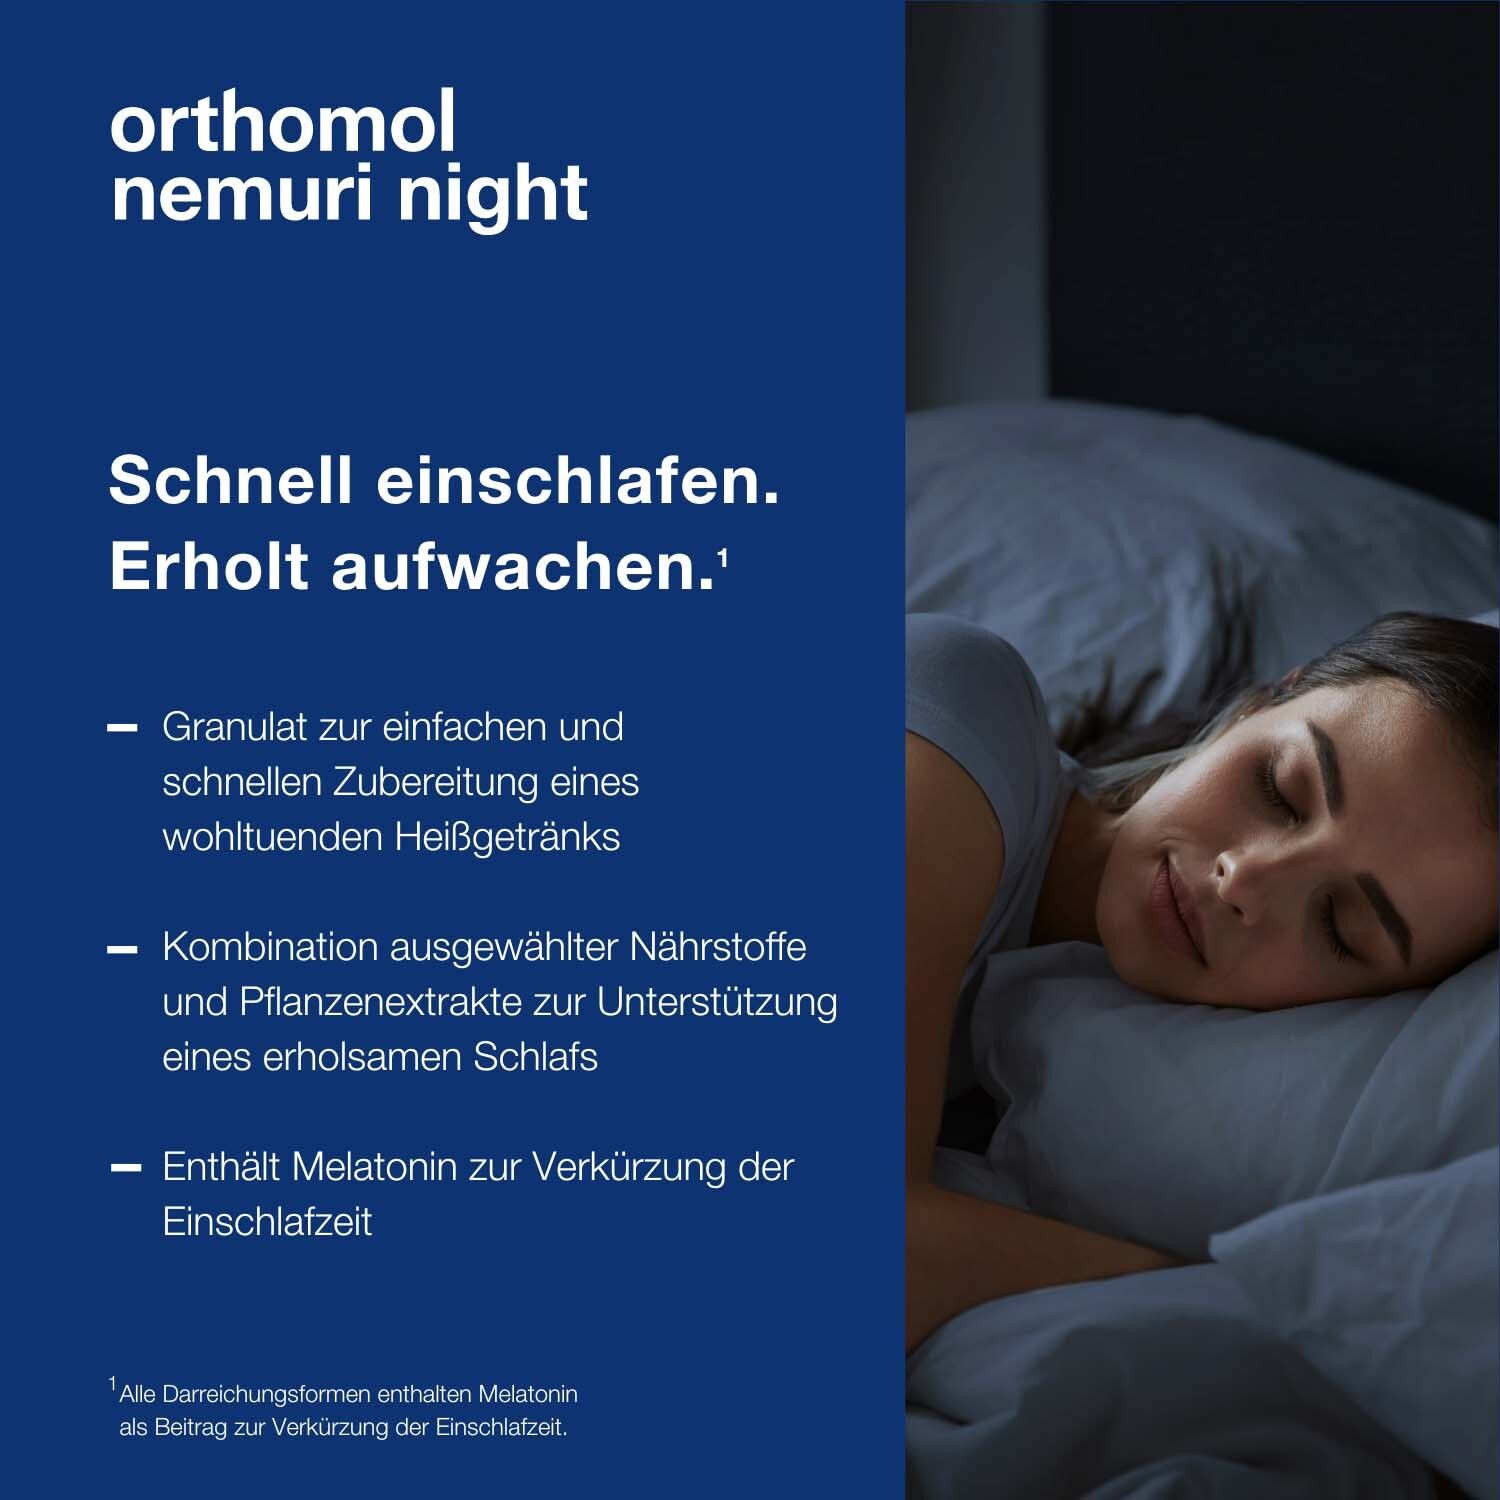 Orthomol Nemuri night - zur Verkürzung der Einschlafzeit - Heißgetränk mit Melatonin und Hopfen-Extrakt - Granulat